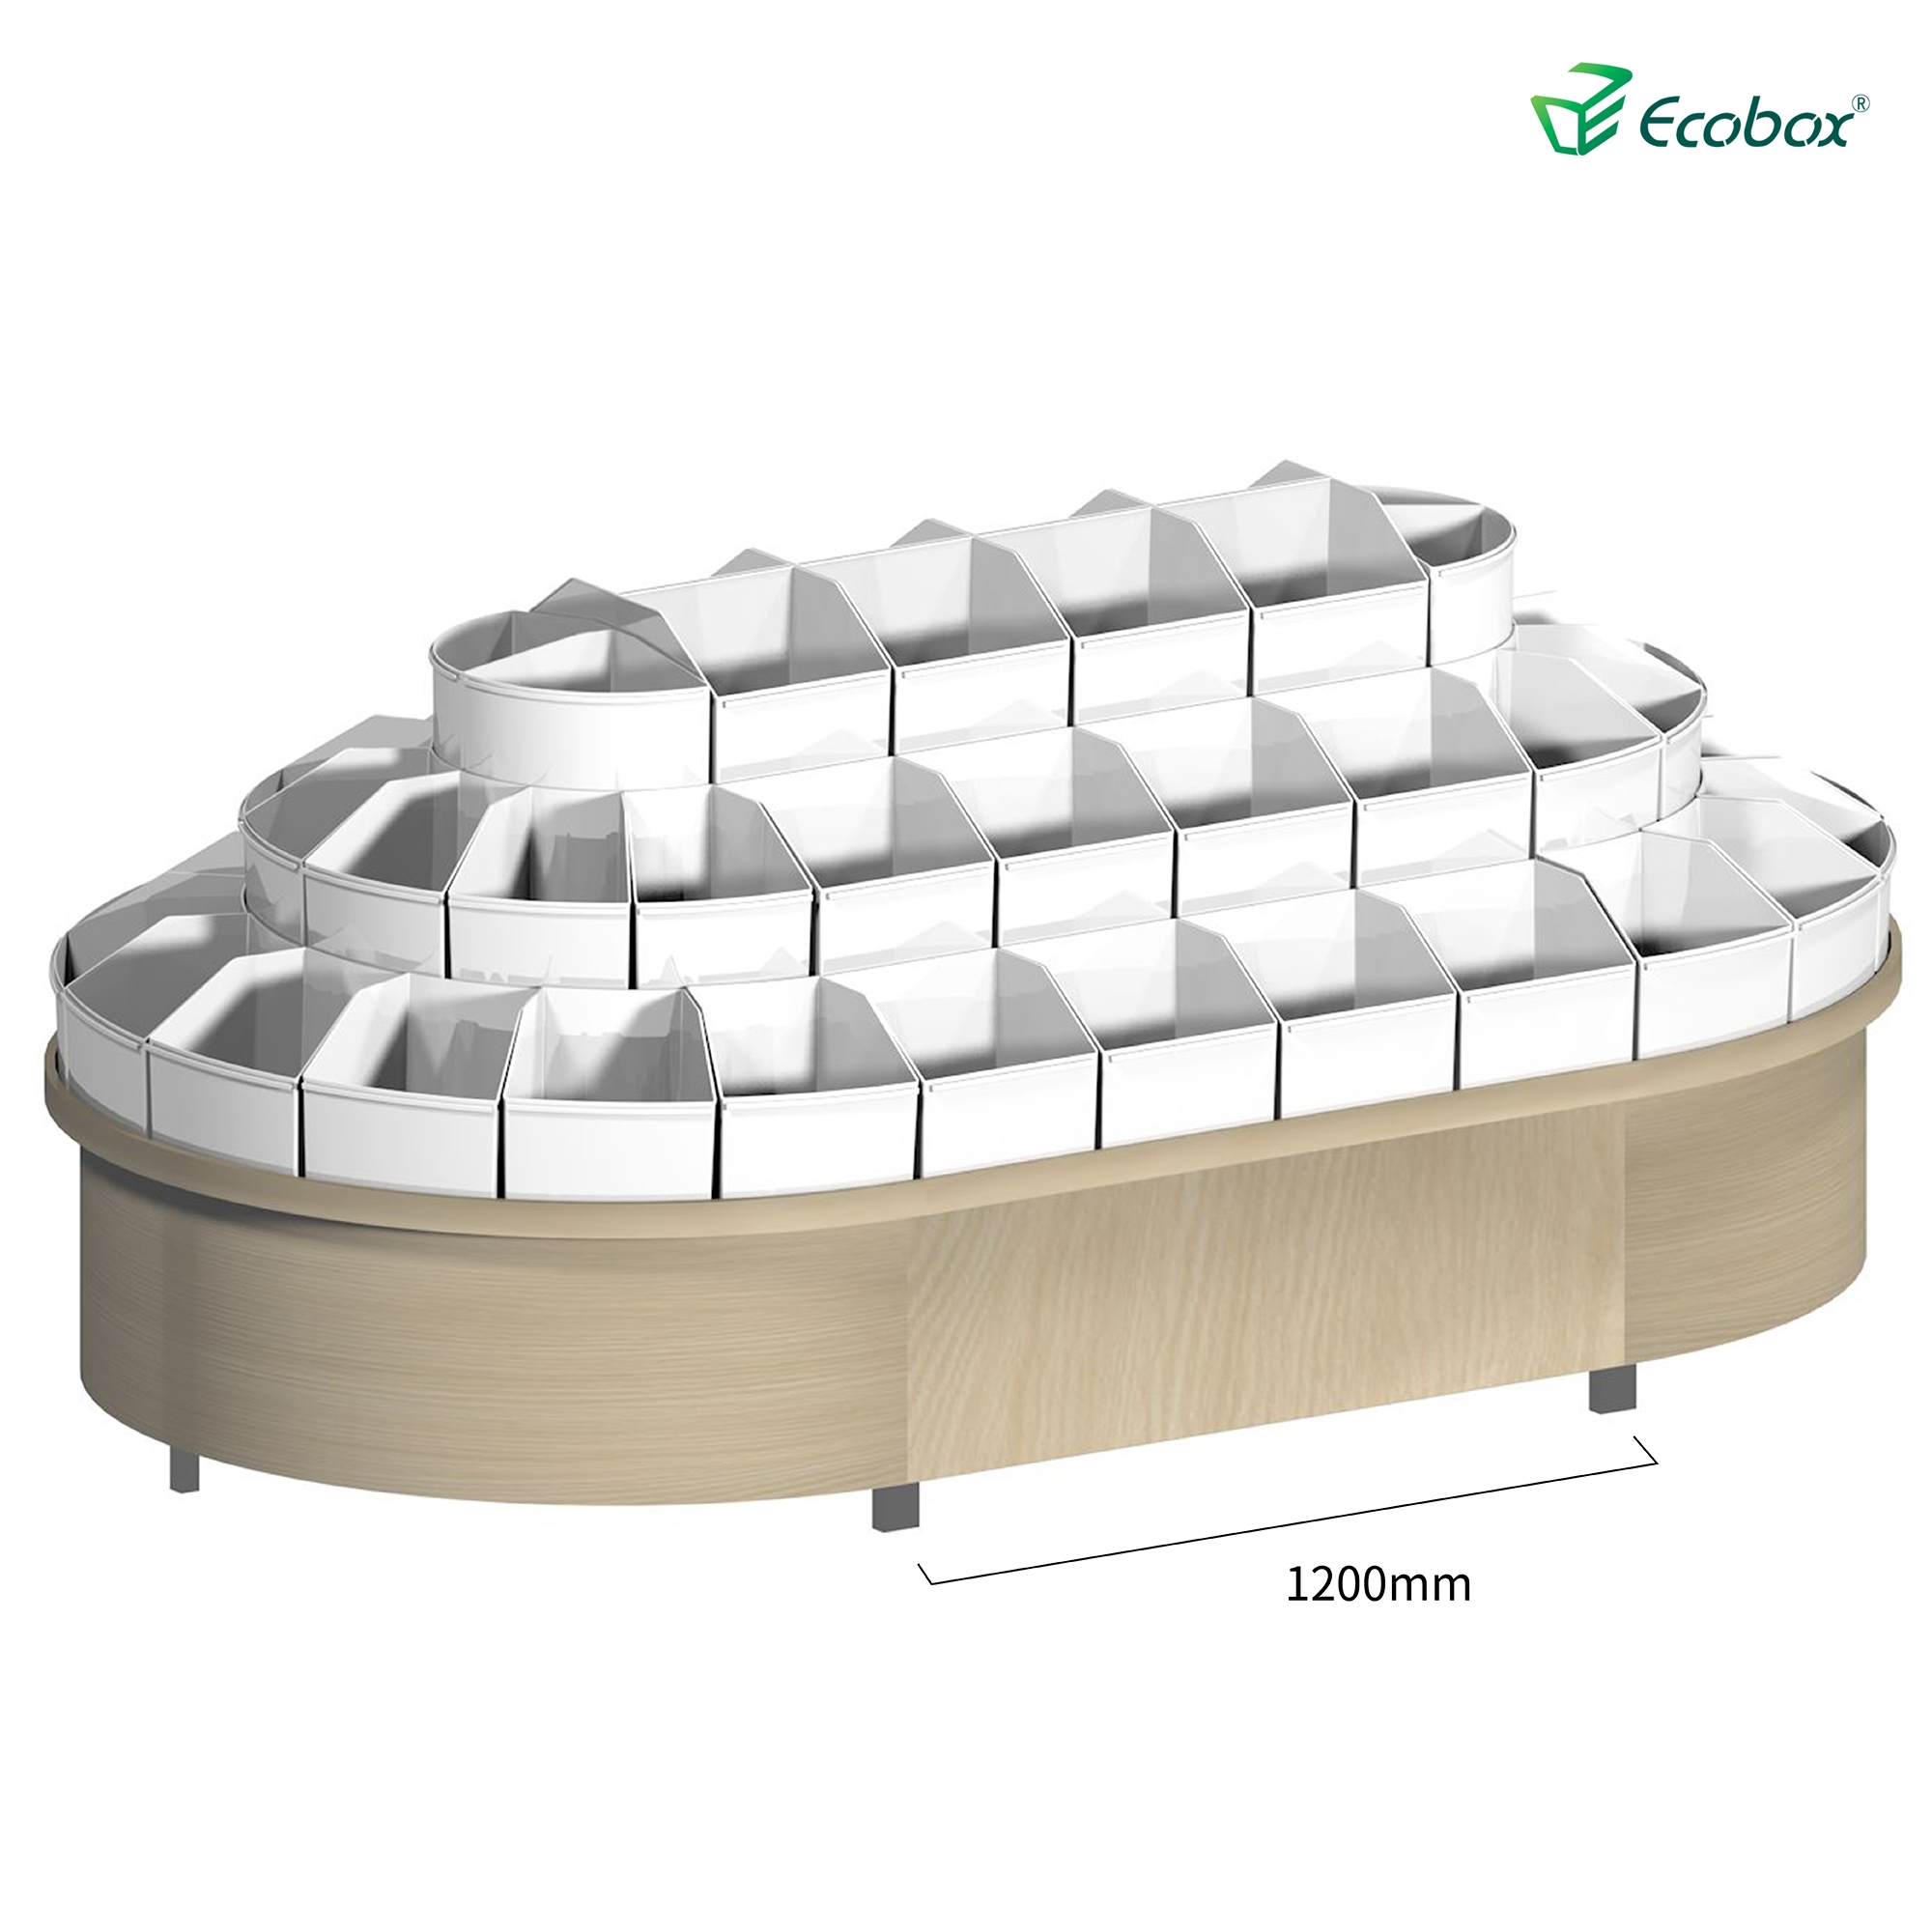 Ecobox G003-Serie Rund-Regal mit Ecobox-Bulk-Bins Supermarkt-Bulk-Nahrungsmittel-Displays